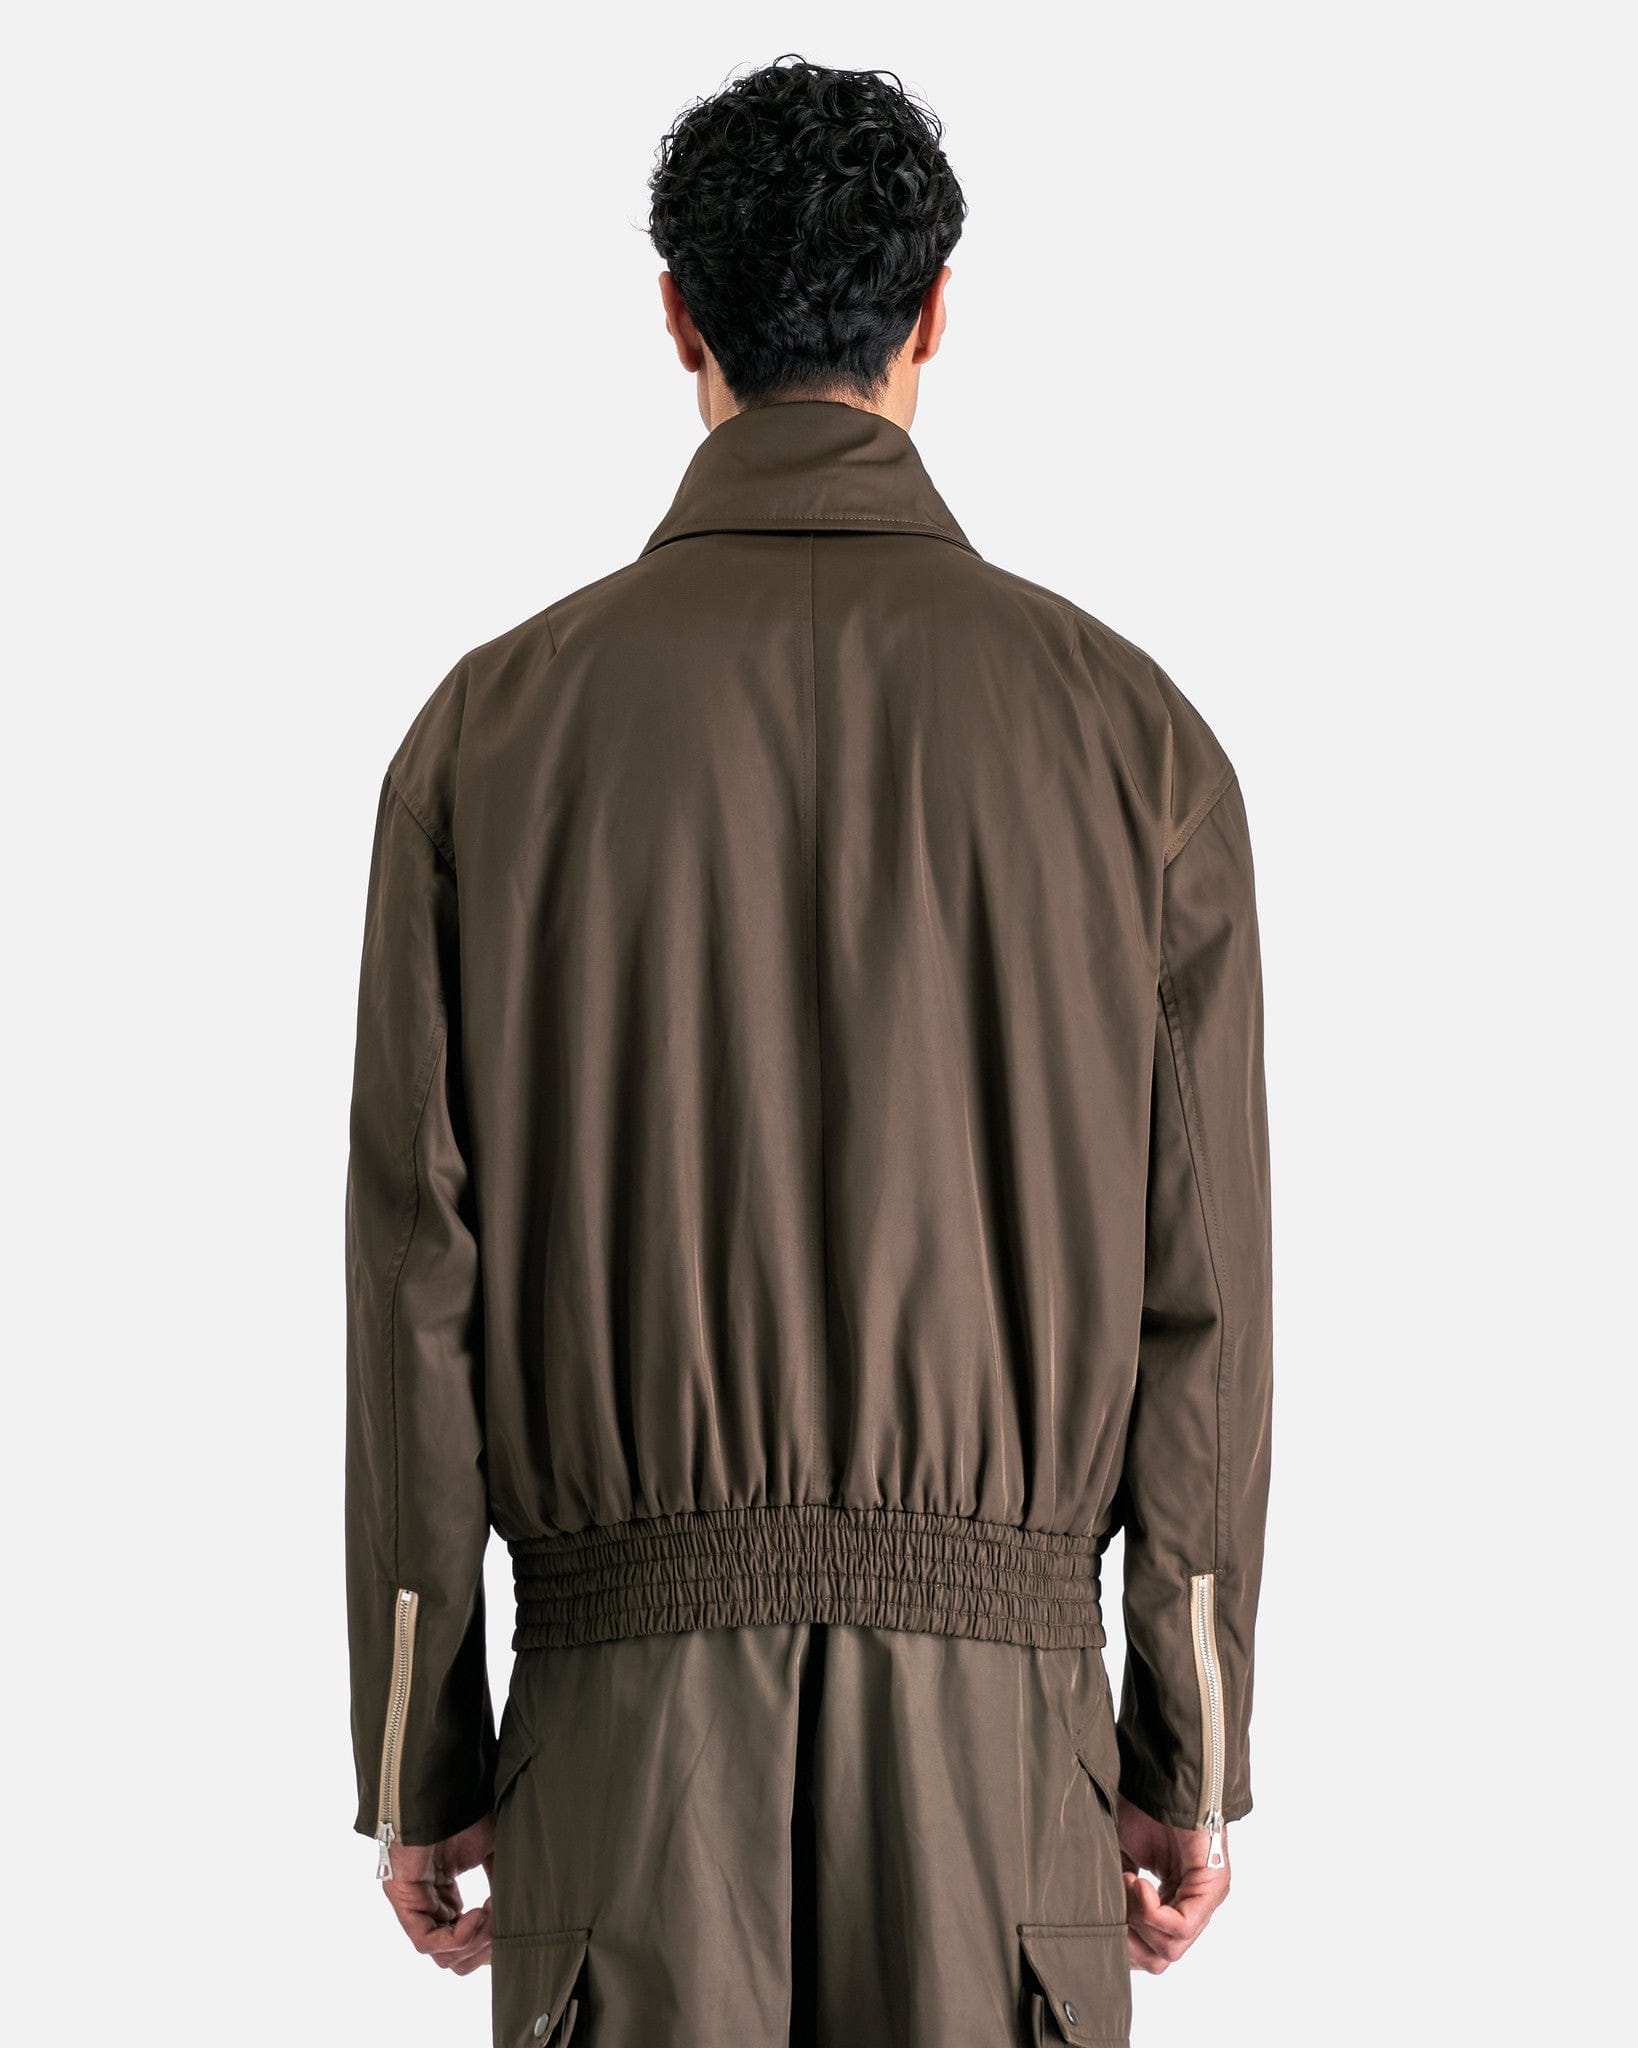 Dries Van Noten Men's Jackets Vanborn Jacket in Khaki